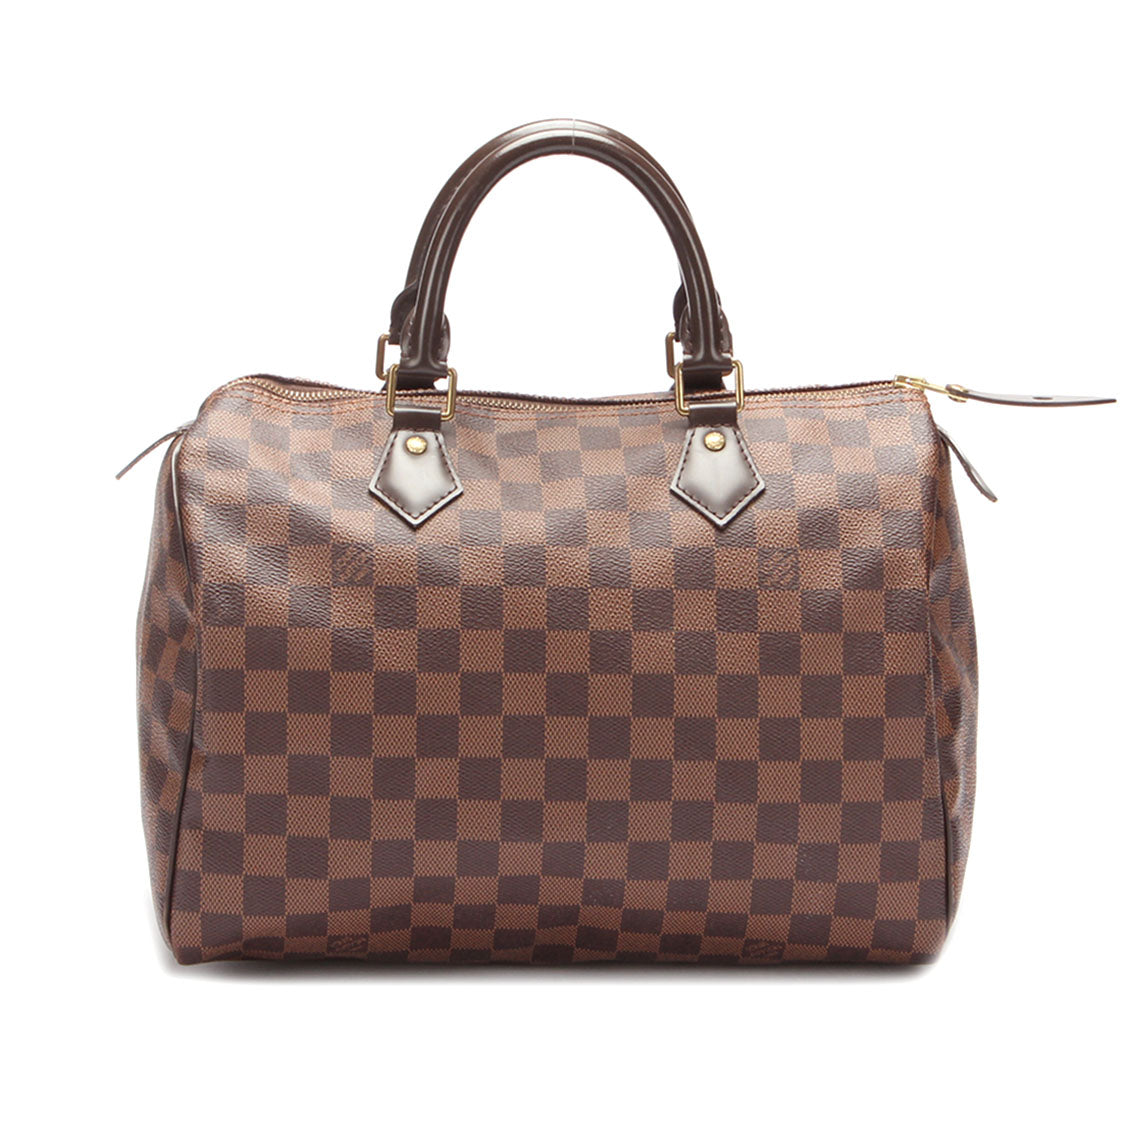 Louis Vuitton Damier Ebene Speedy 30 Canvas Handbag in Good condition